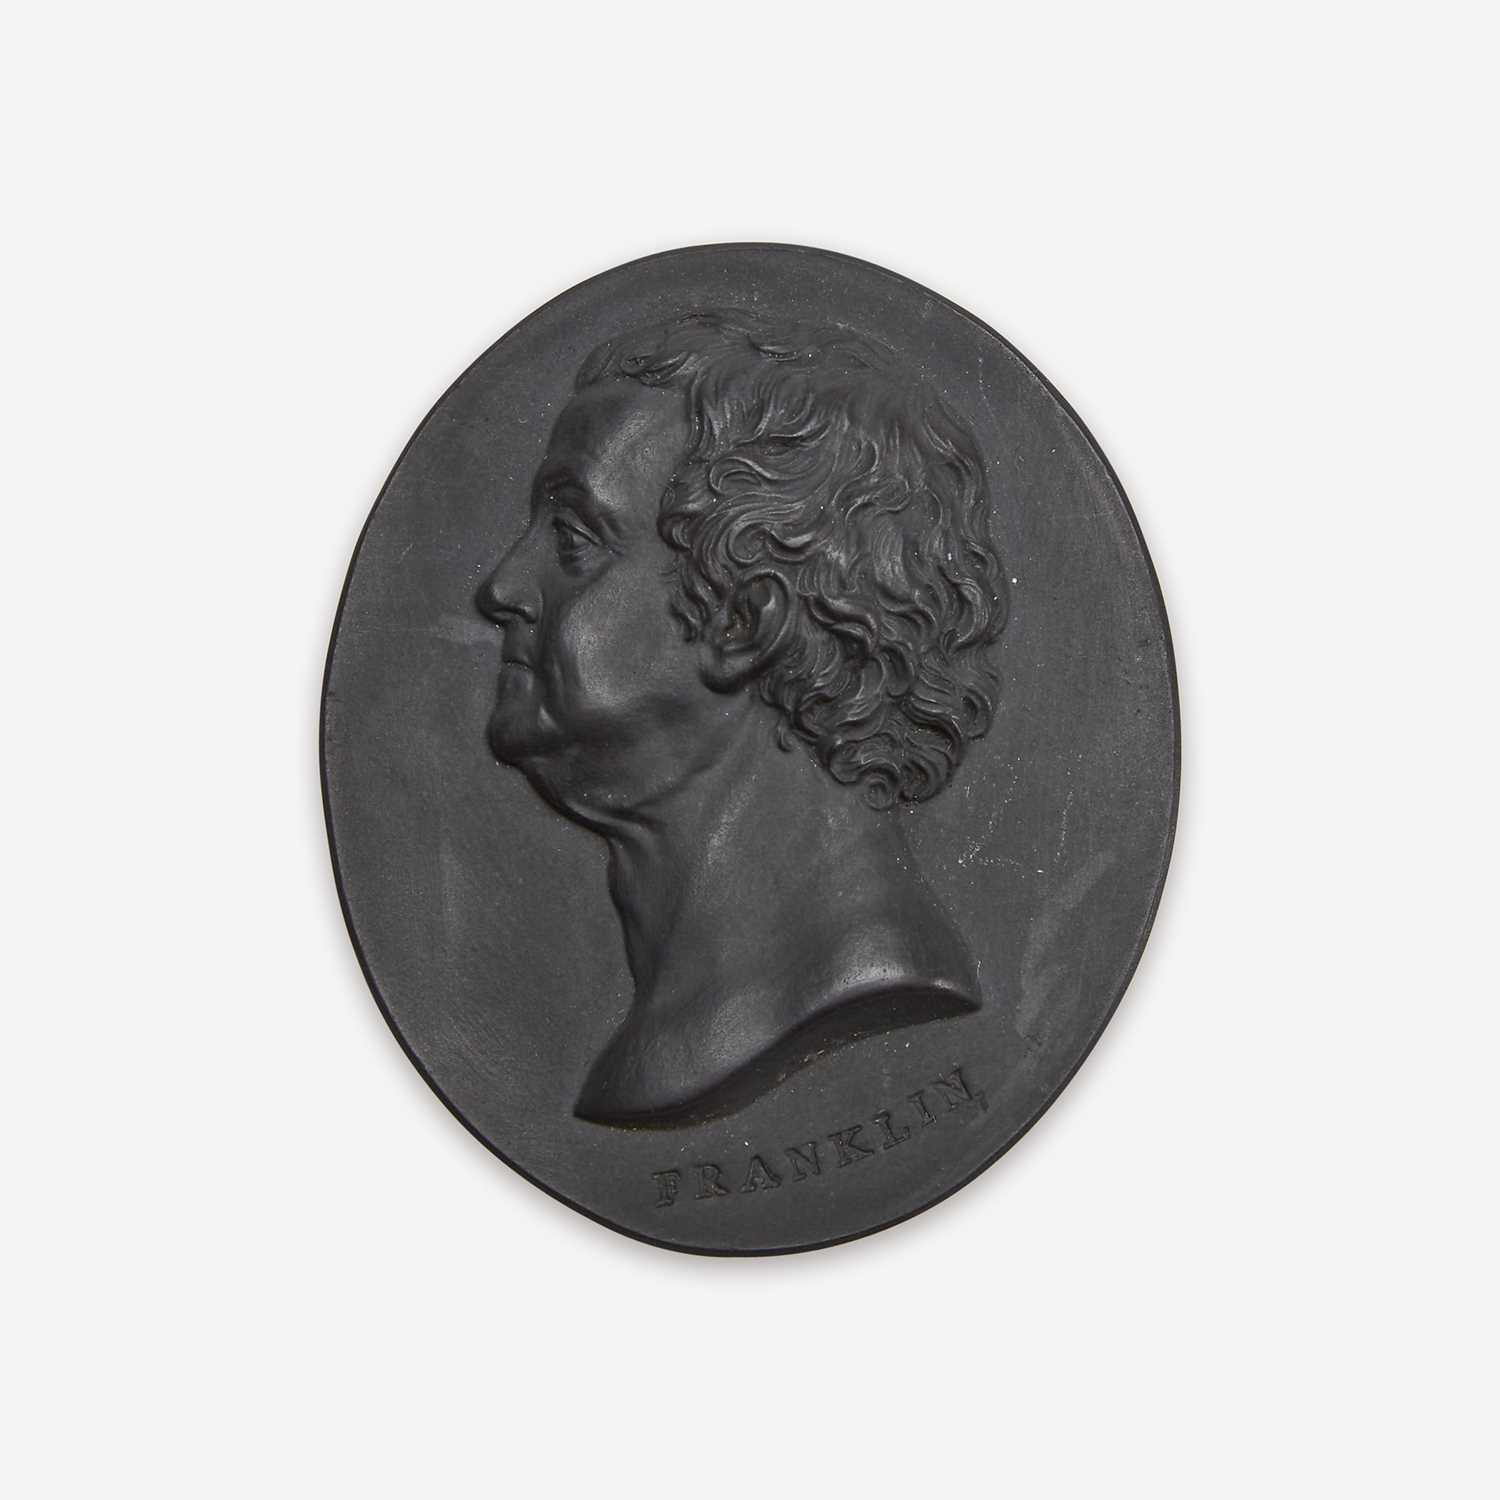 Lot 38 - A Wedgwood & Bentley black basalt portrait medallion of Benjamin Franklin (1706-1790)